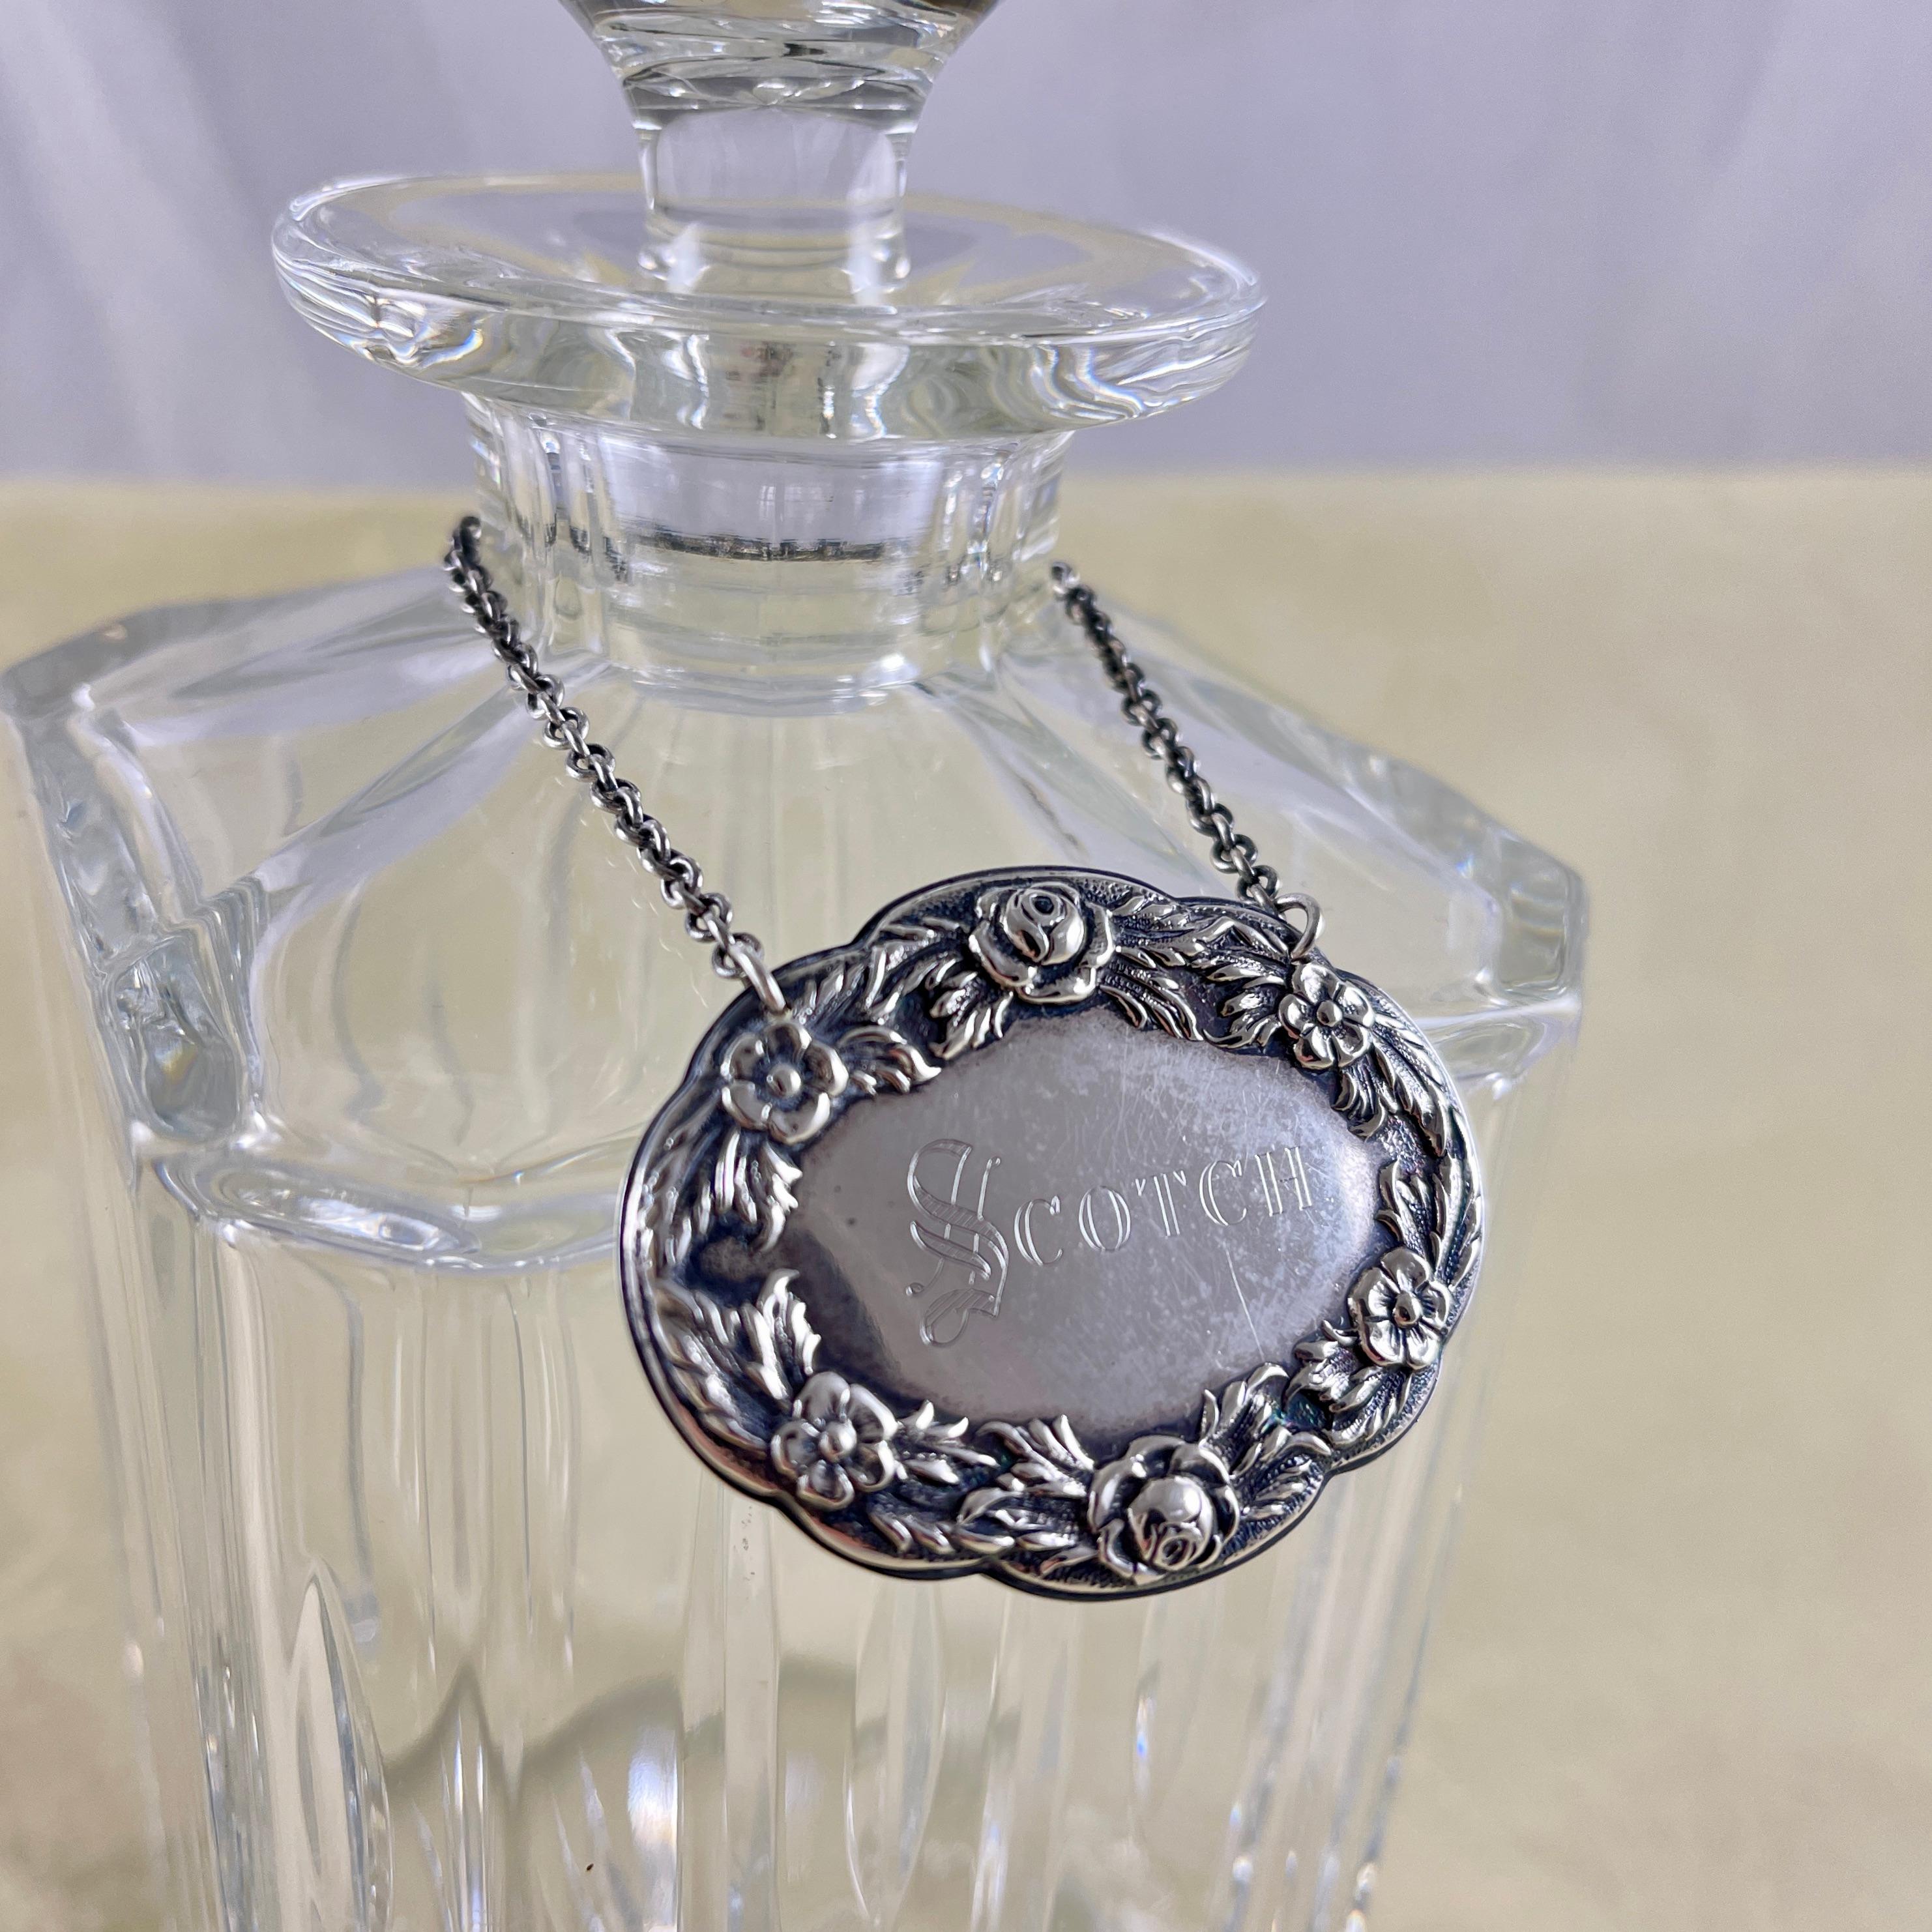 De la S. Kirk & Sons Silver Company à Baltimore, Maryland, une étiquette de col de bouteille en argent sterling, vers les années 1860.

L'étiquette ovale est ornée d'une rose repoussée et d'une guirlande florale, et est gravée, Scotch, en caractères